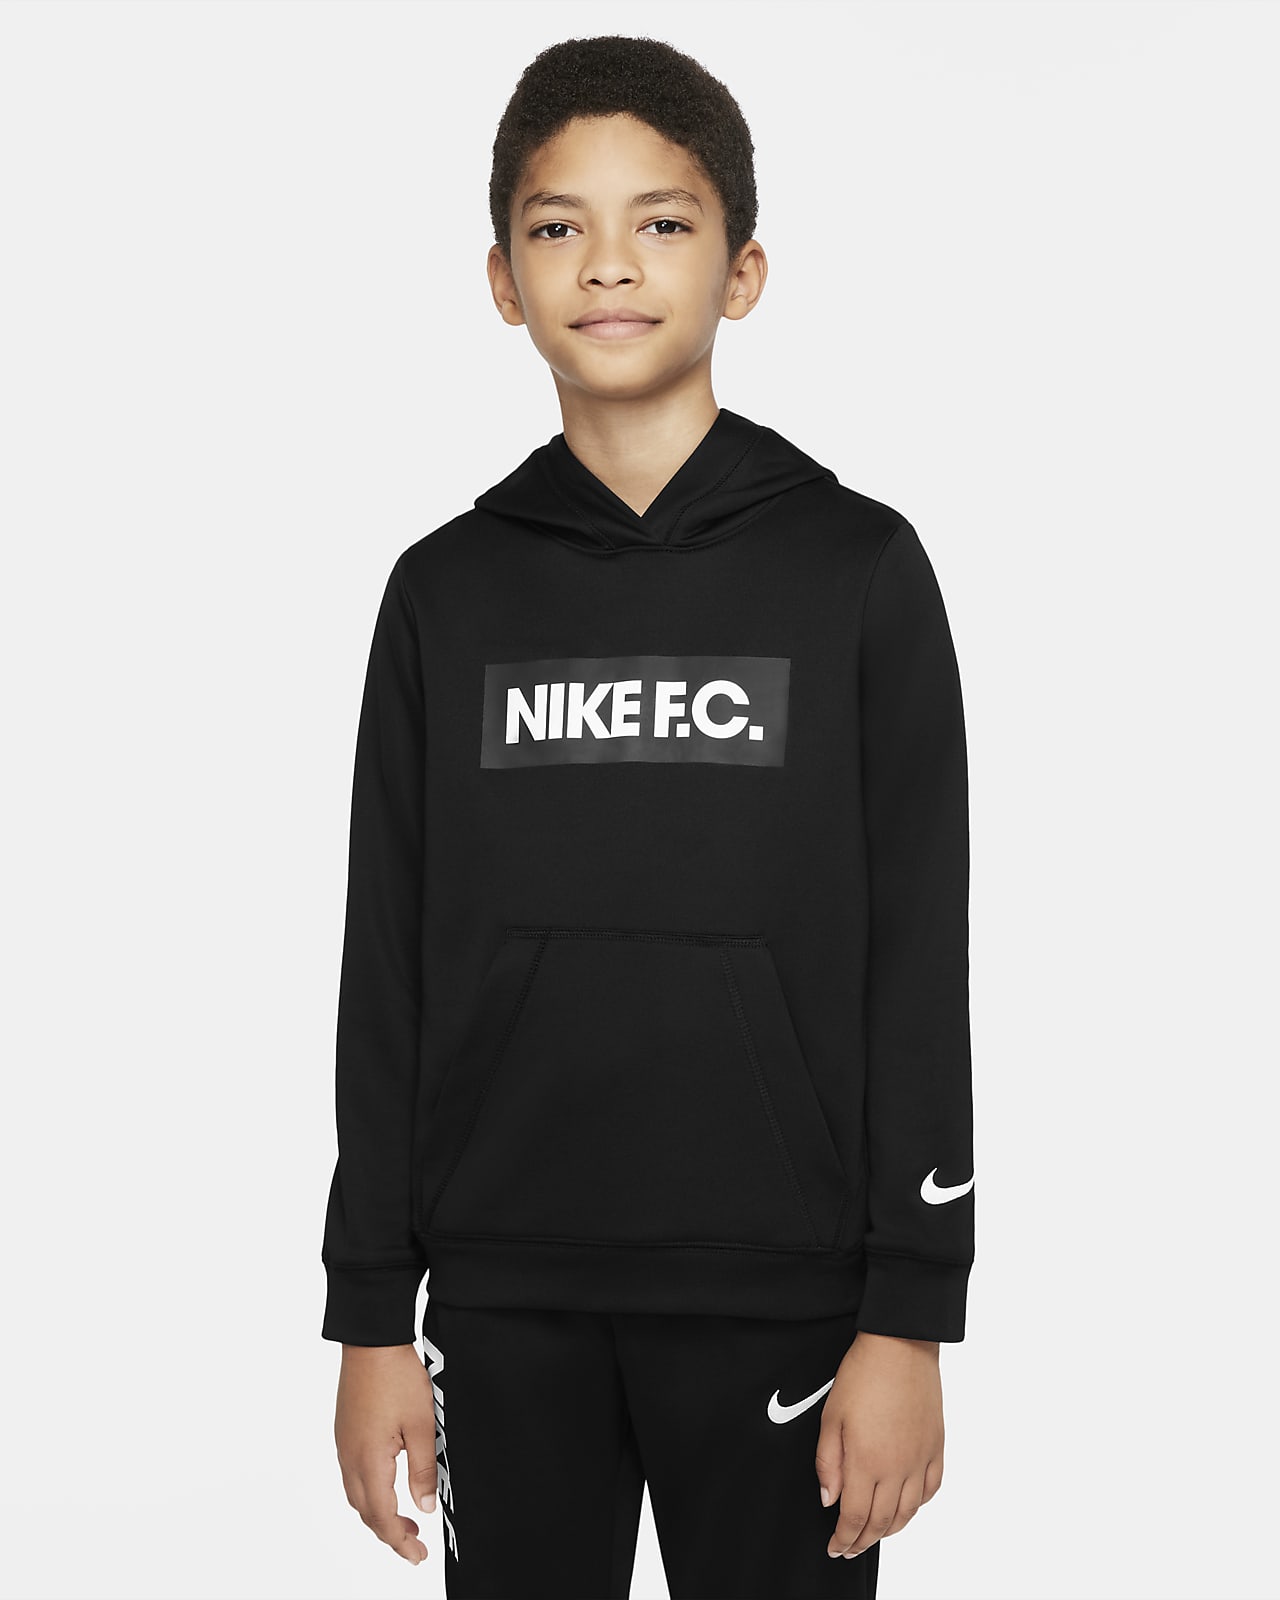 Nike F.C. Older Kids' Football Hoodie